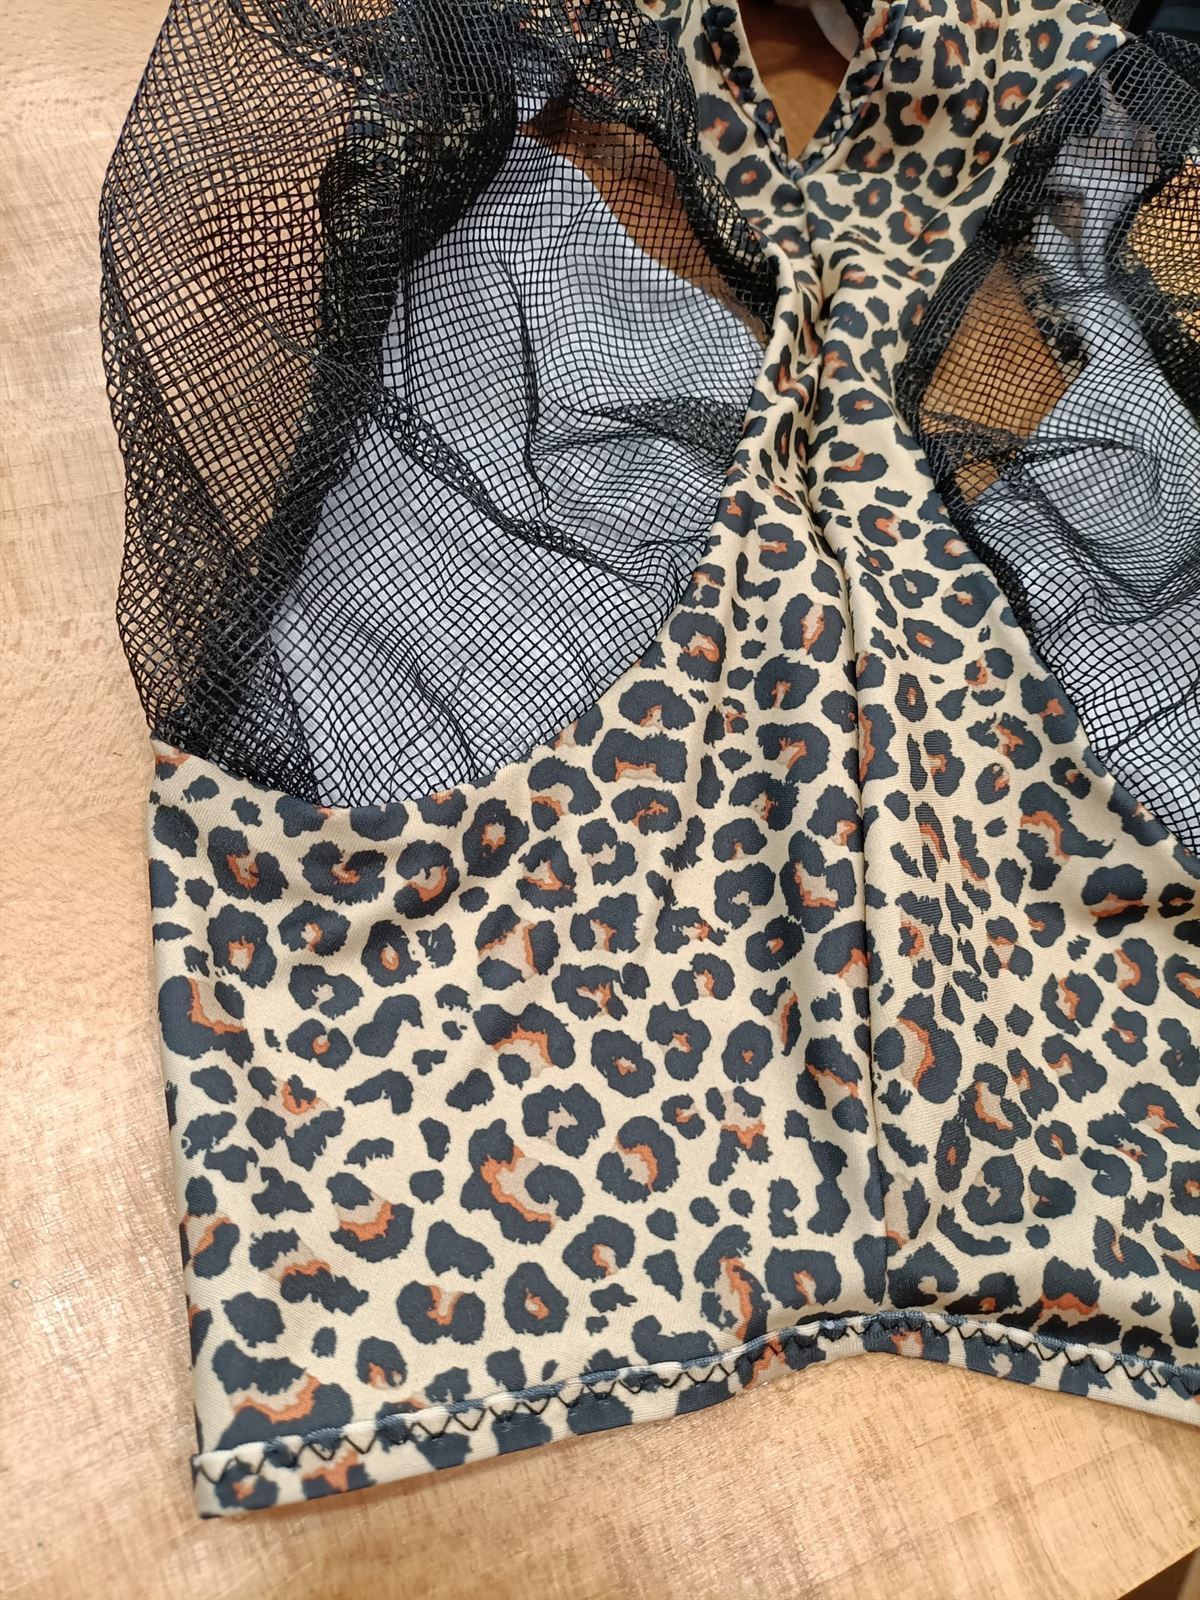 Máscara antimoscas PROFESSIONAL´S CHOICE comfort fit, con orejas, estampado Cheetah leopardo, talla COB - Imagen 2